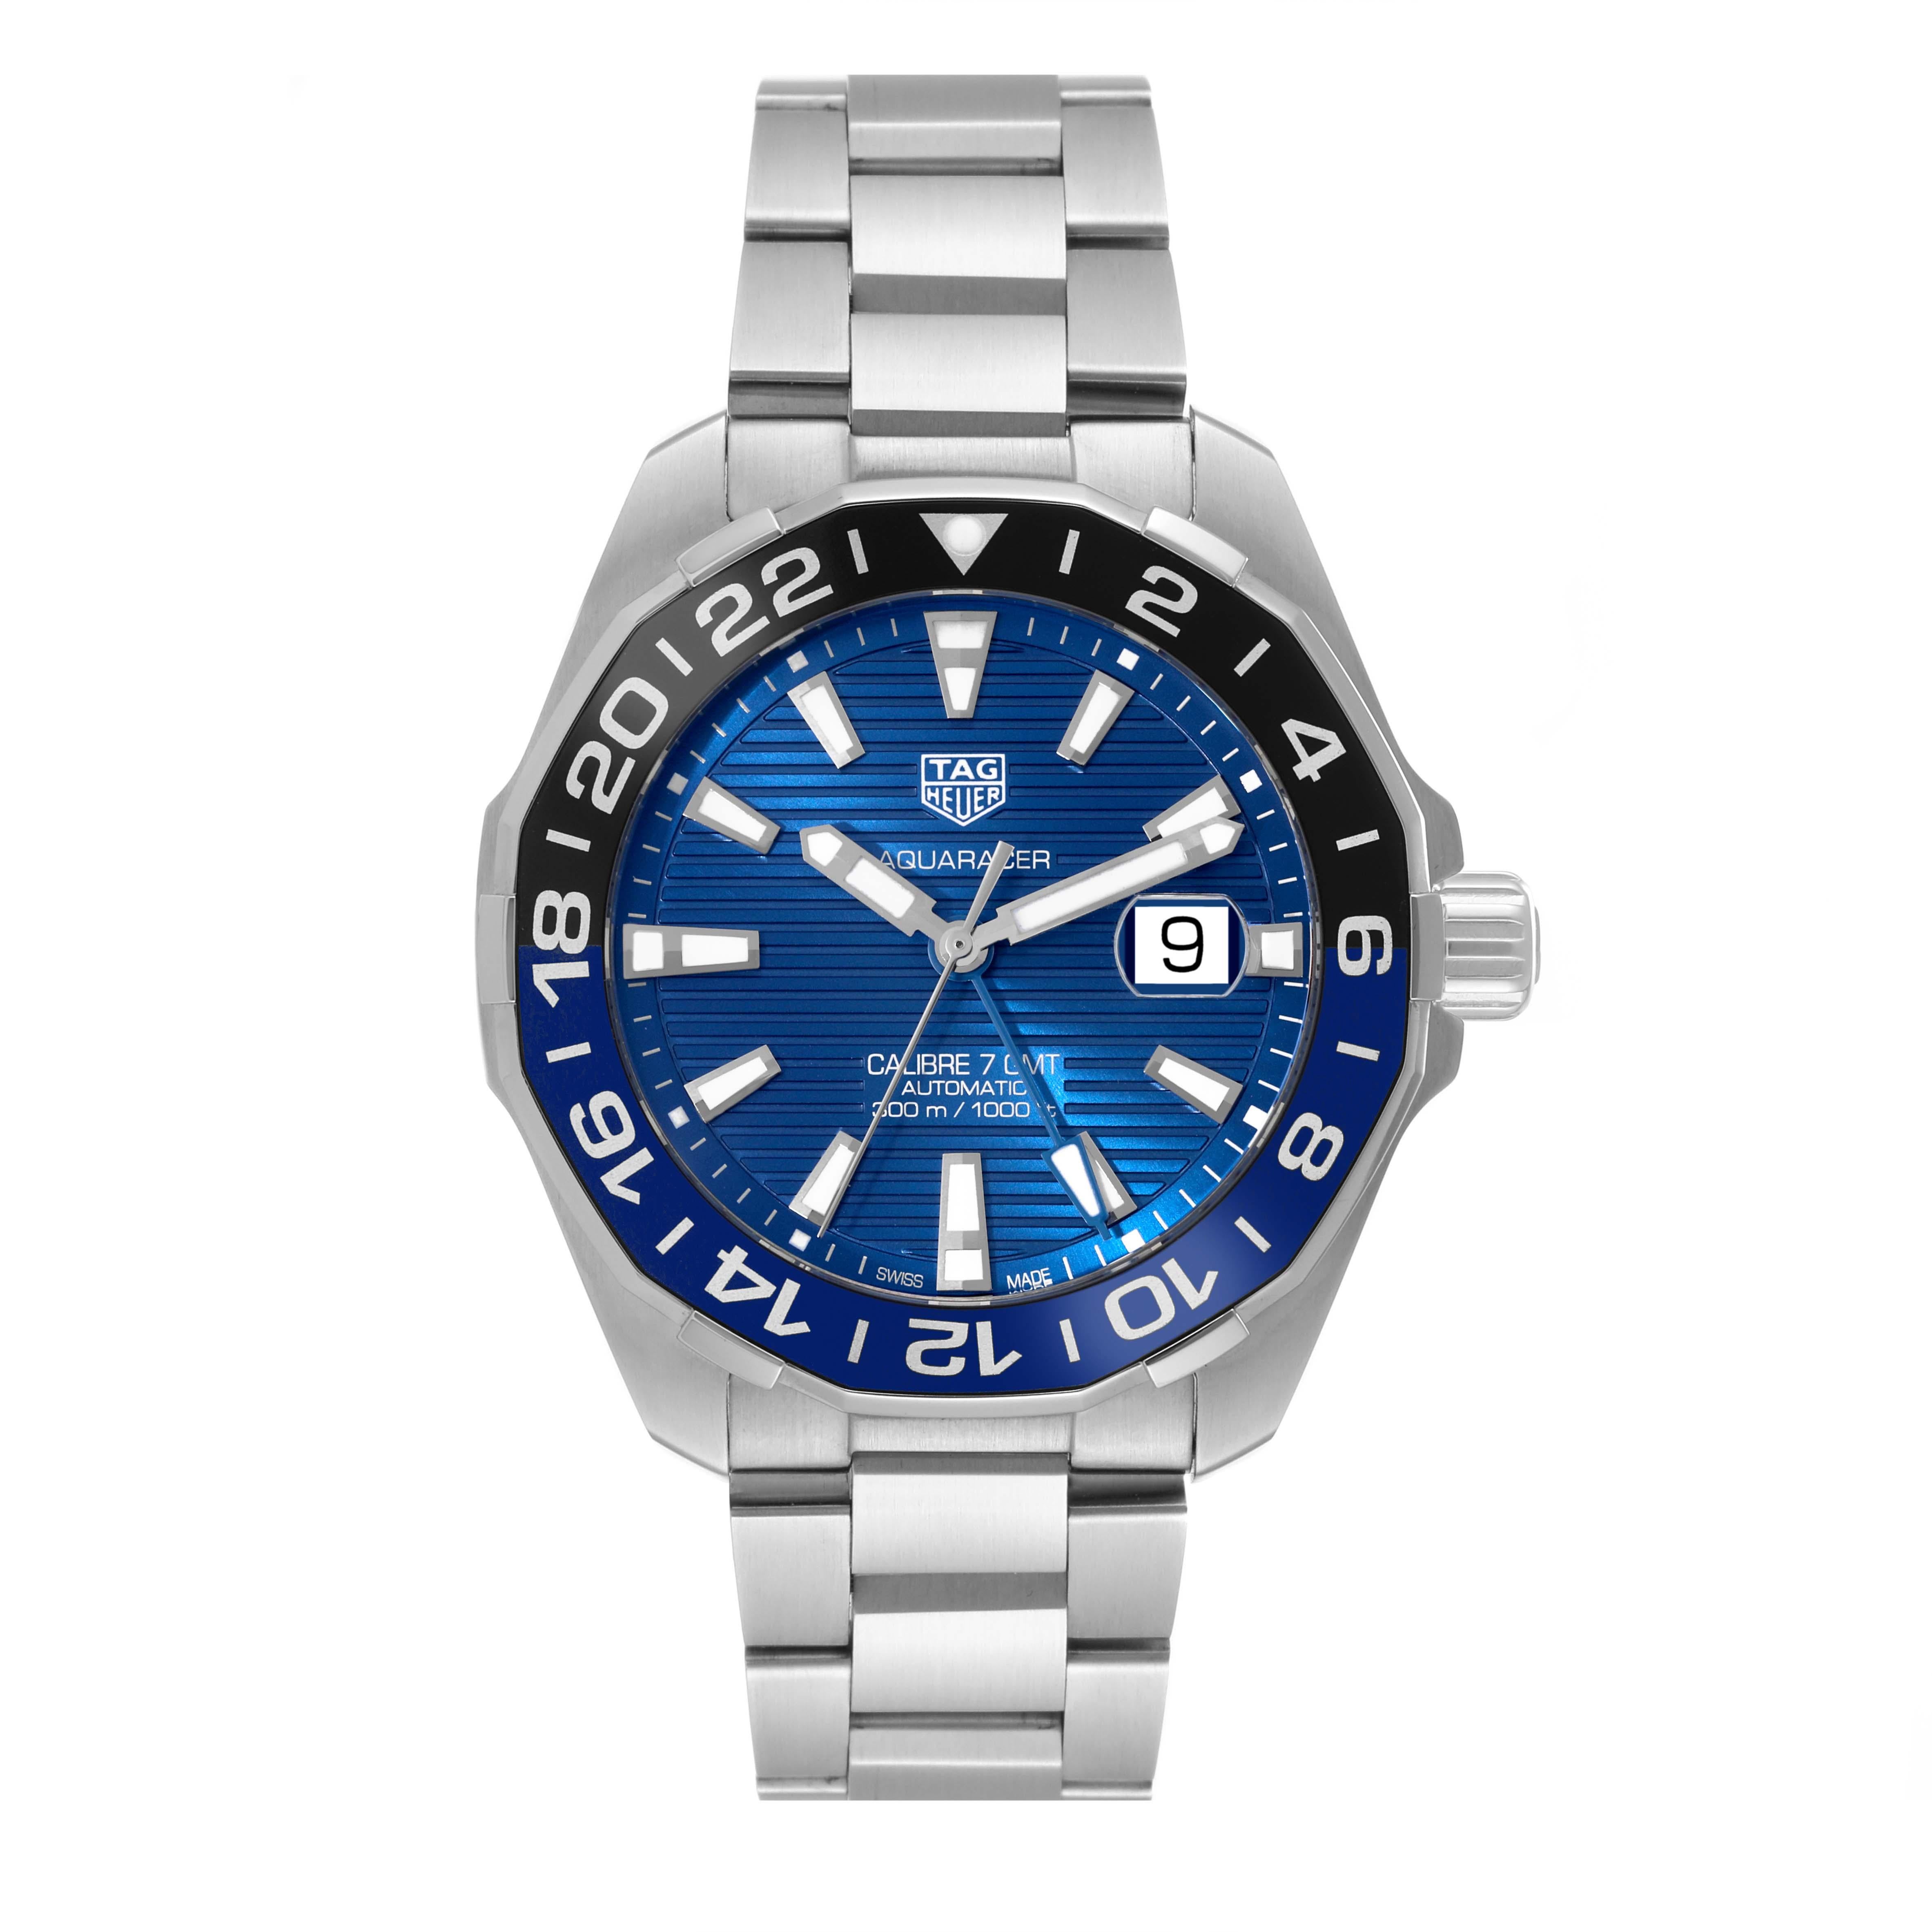 Tag Heuer Aquaracer Blue Dial Steel Herrenuhr WAY201T. Automatisches Uhrwerk mit Selbstaufzug. Gehäuse aus Edelstahl mit einem Durchmesser von 43.0 mm. Blaue und schwarze bidirektionale Drehlünette aus Edelstahl. Kratzfestes Saphirglas mit